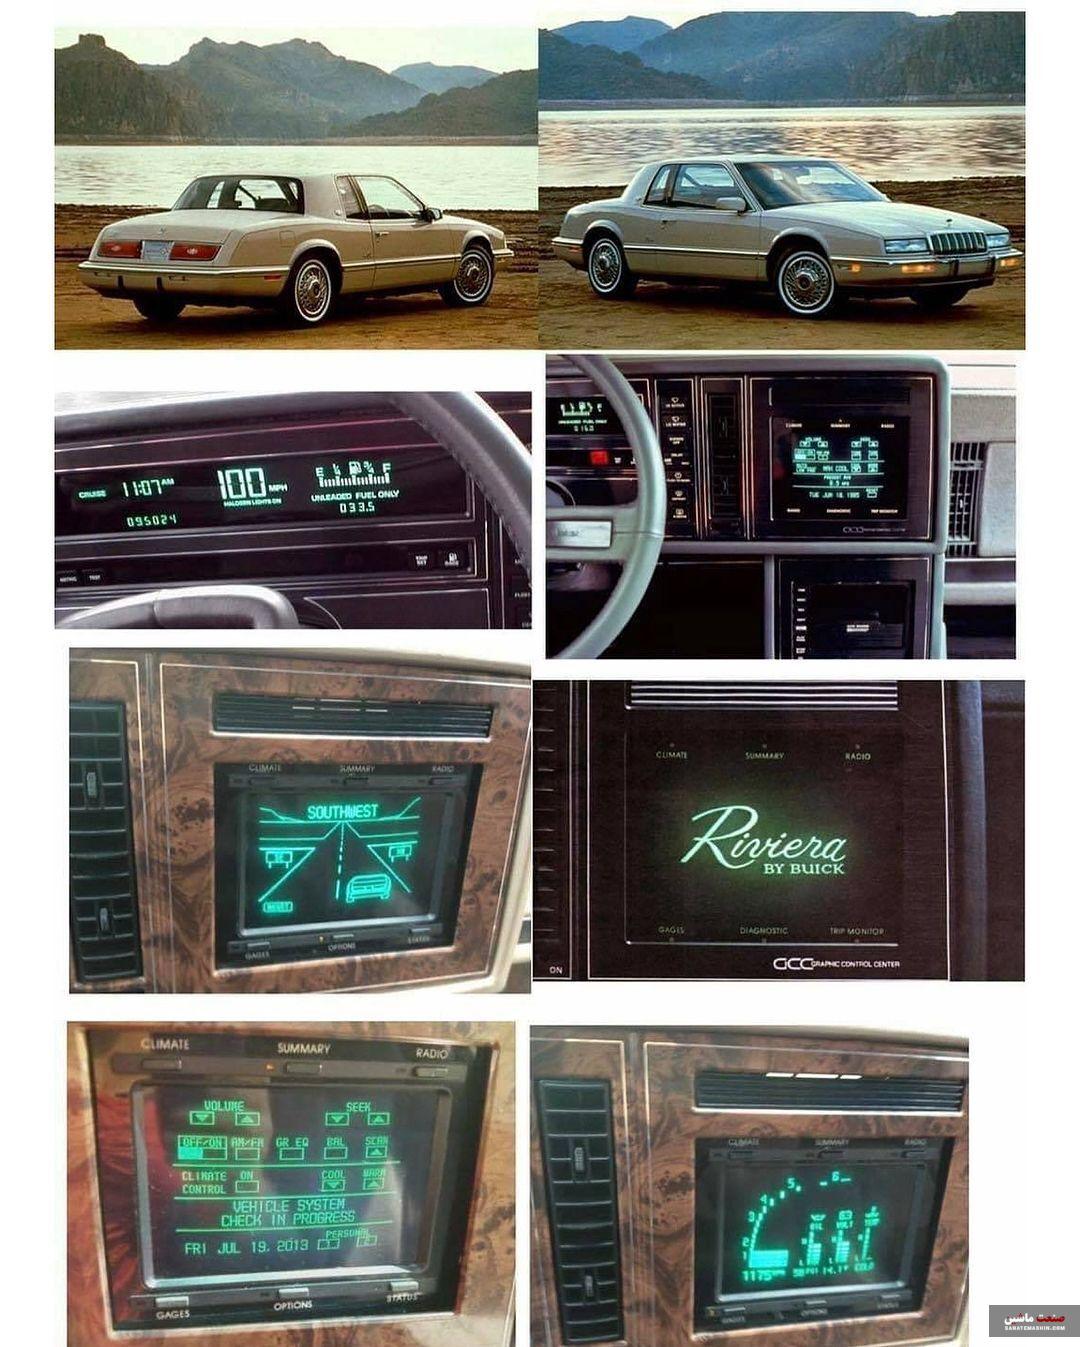 نمایشگر لمسی در کابین این ماشین آمریکایی سال 1986 +تصاویر